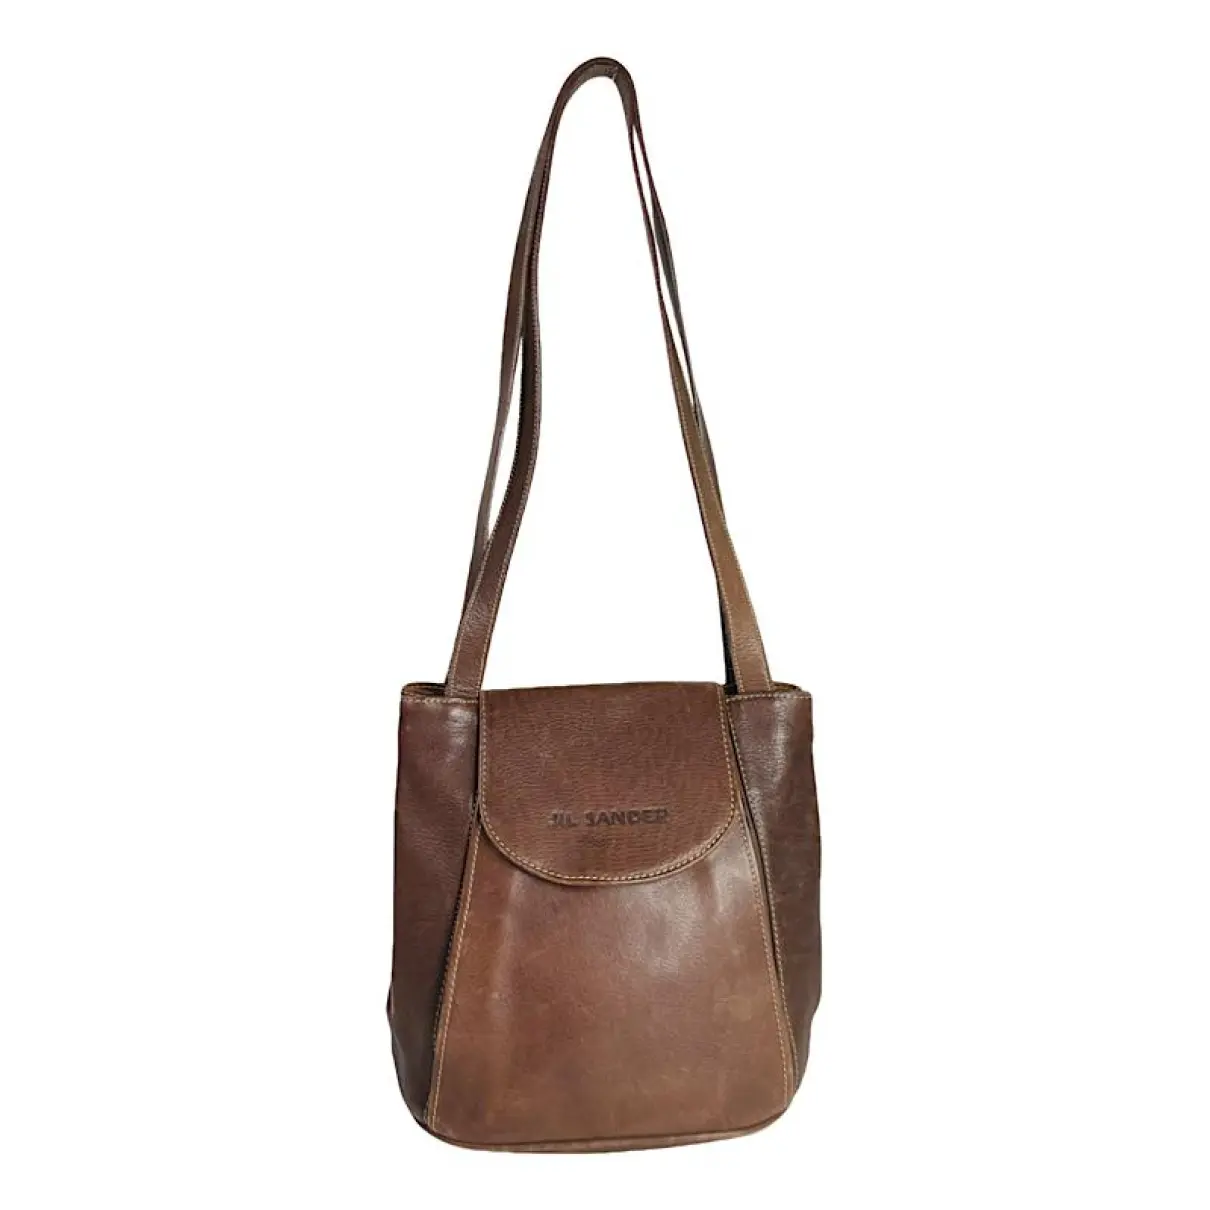 Leather handbag Jil Sander - Vintage